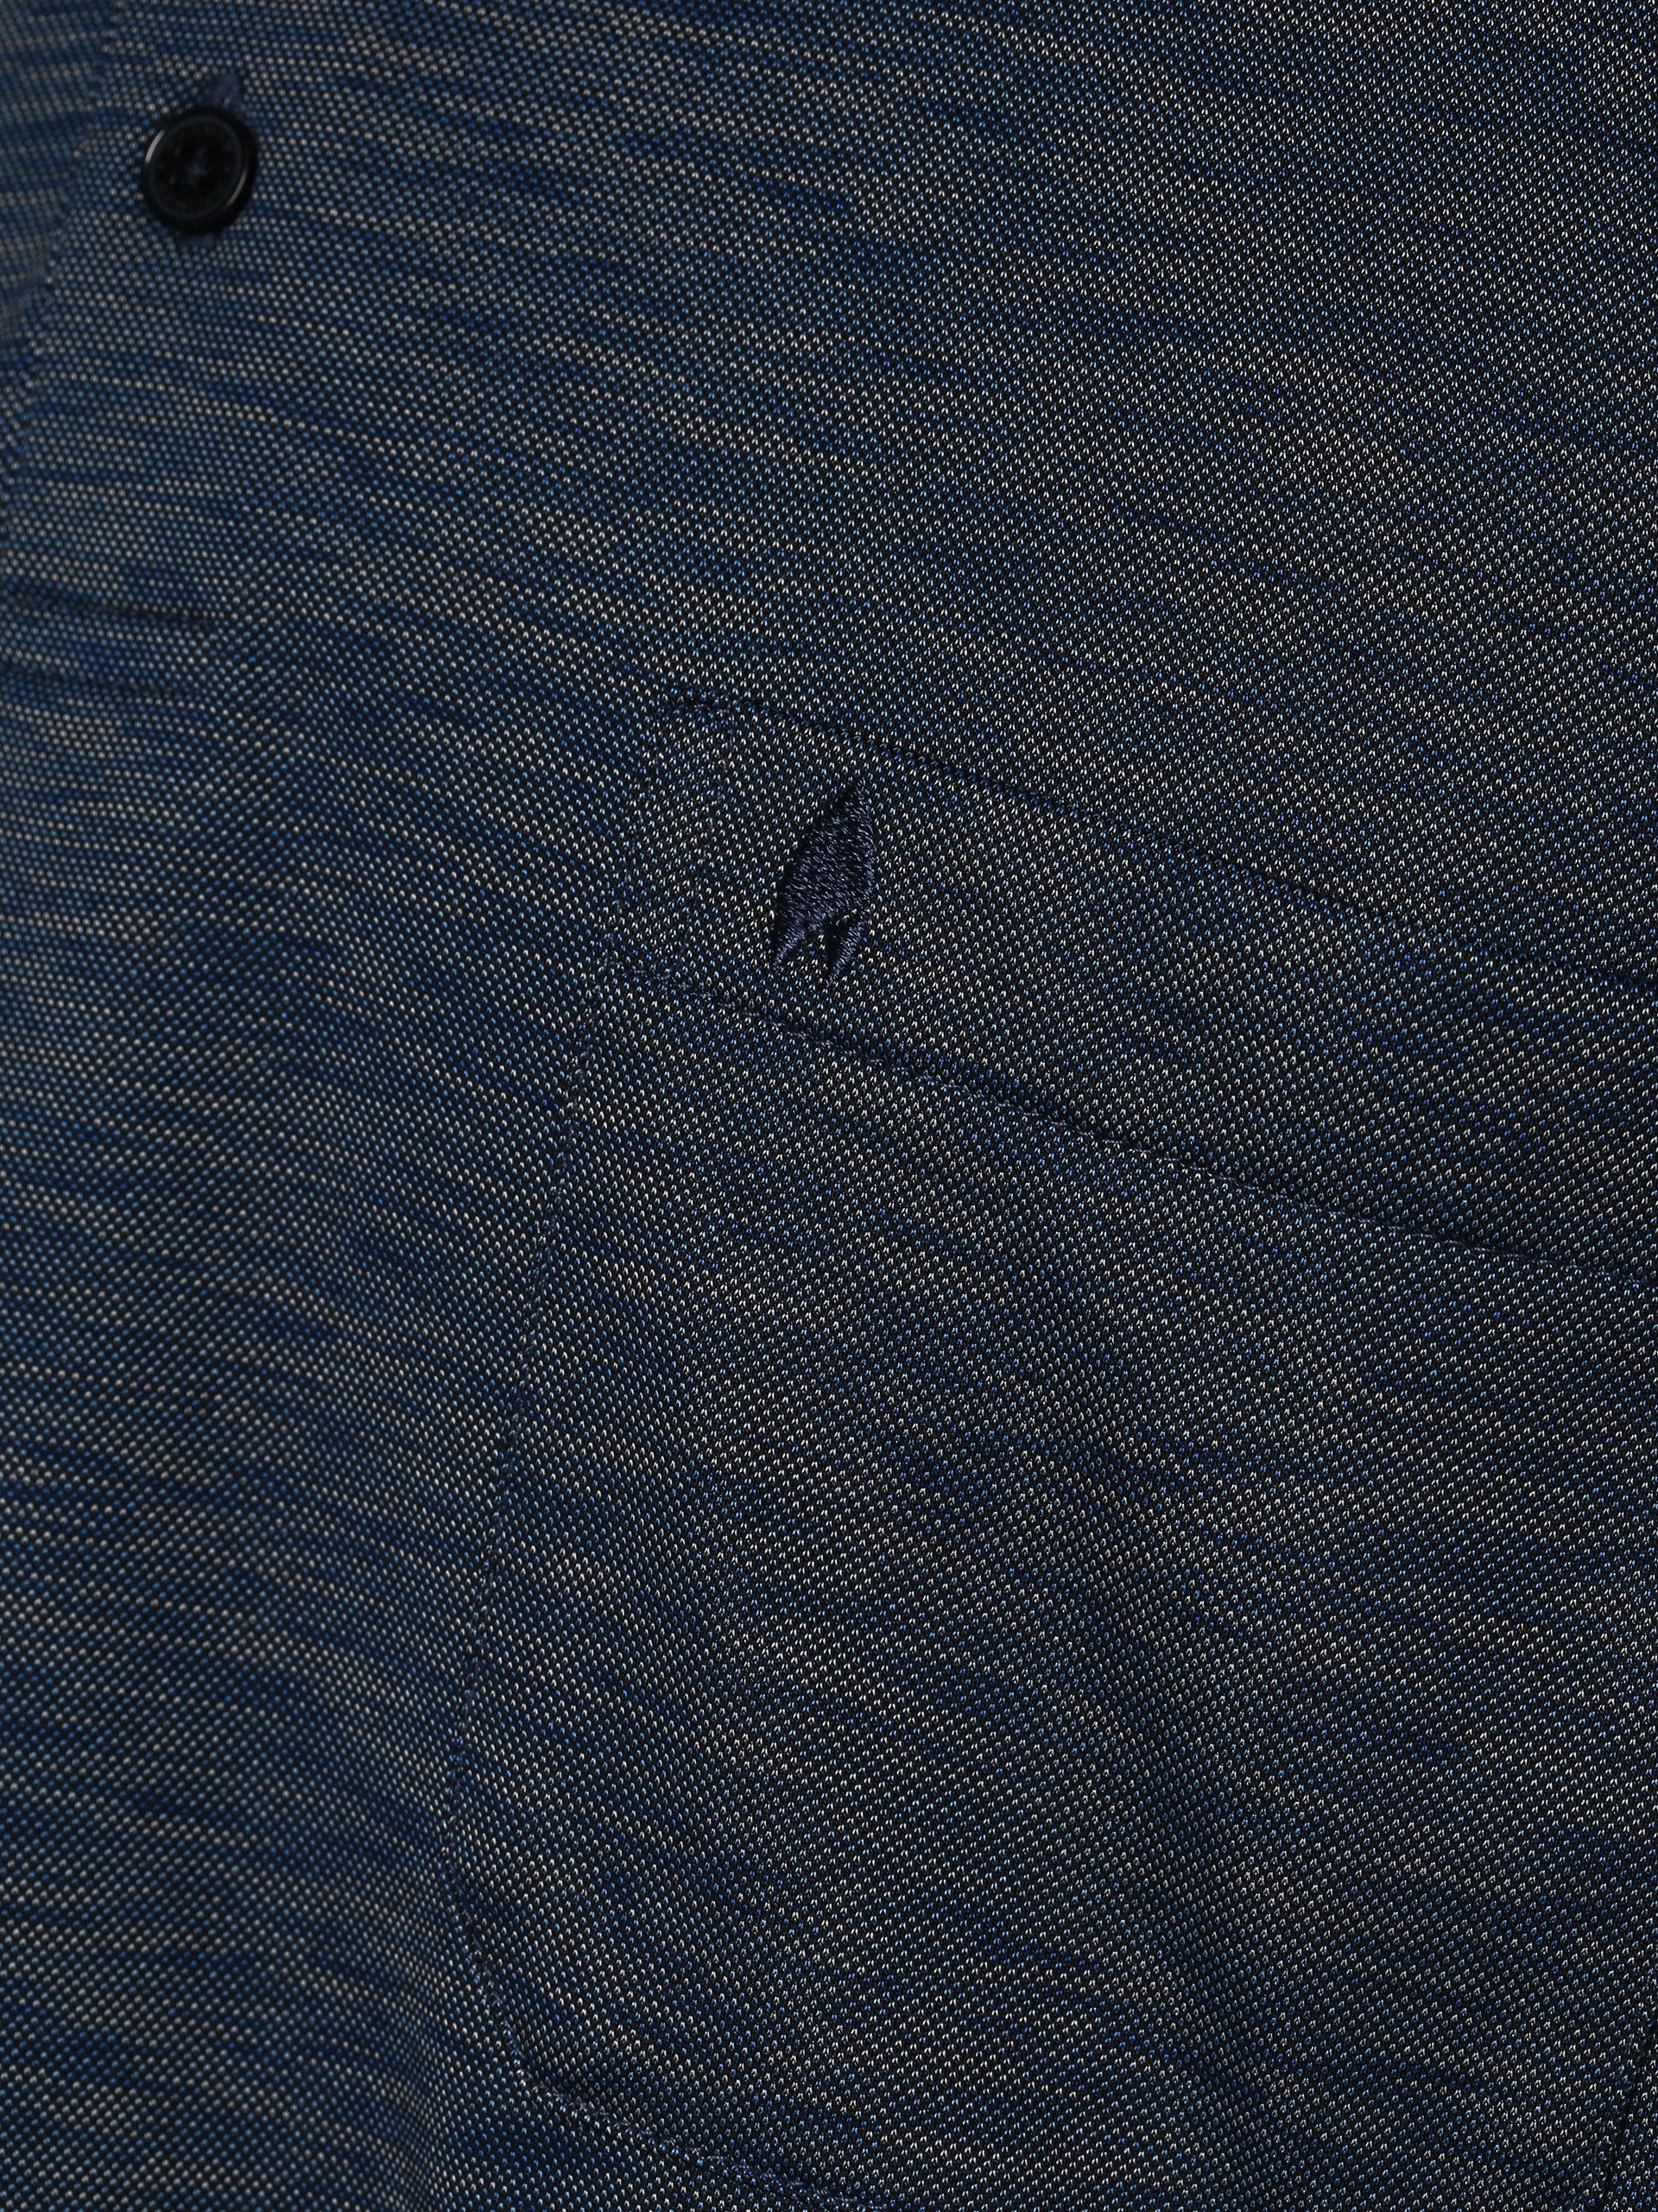 Poloshirt marine blau RAGMAN